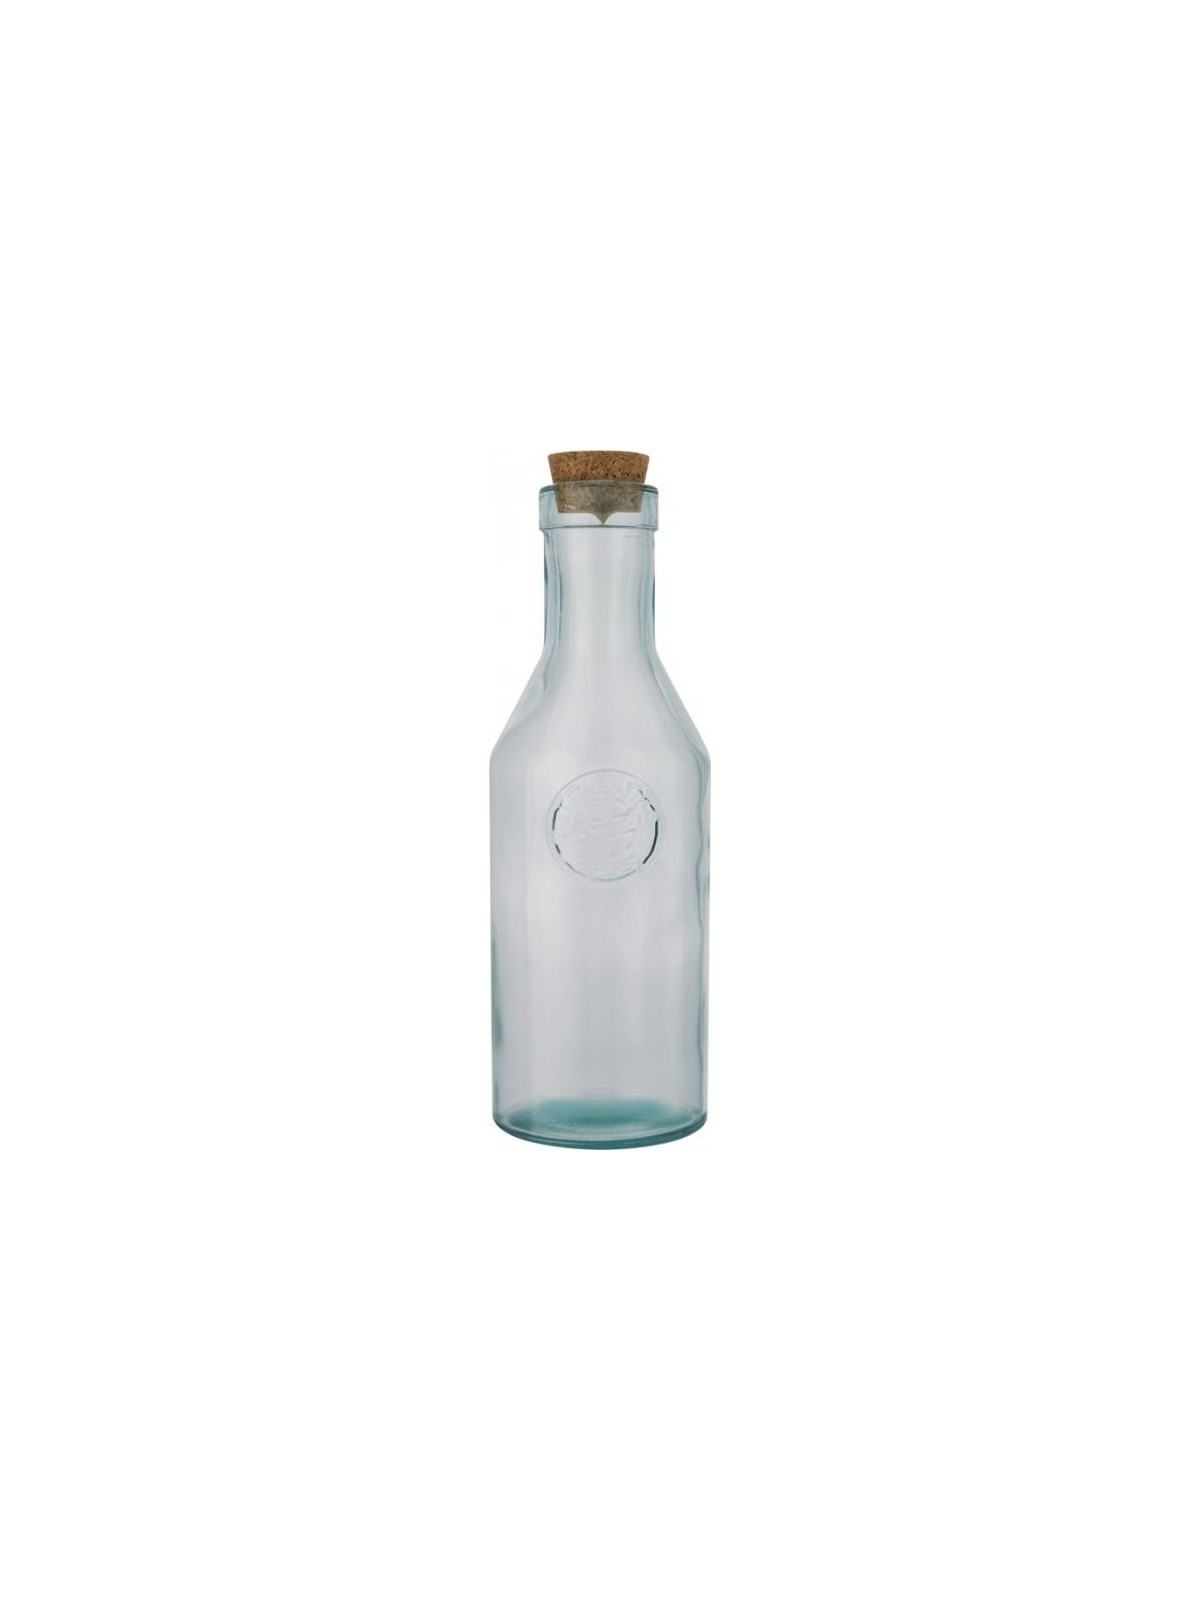 29-334 Carafe en verre recyclé personnalisé